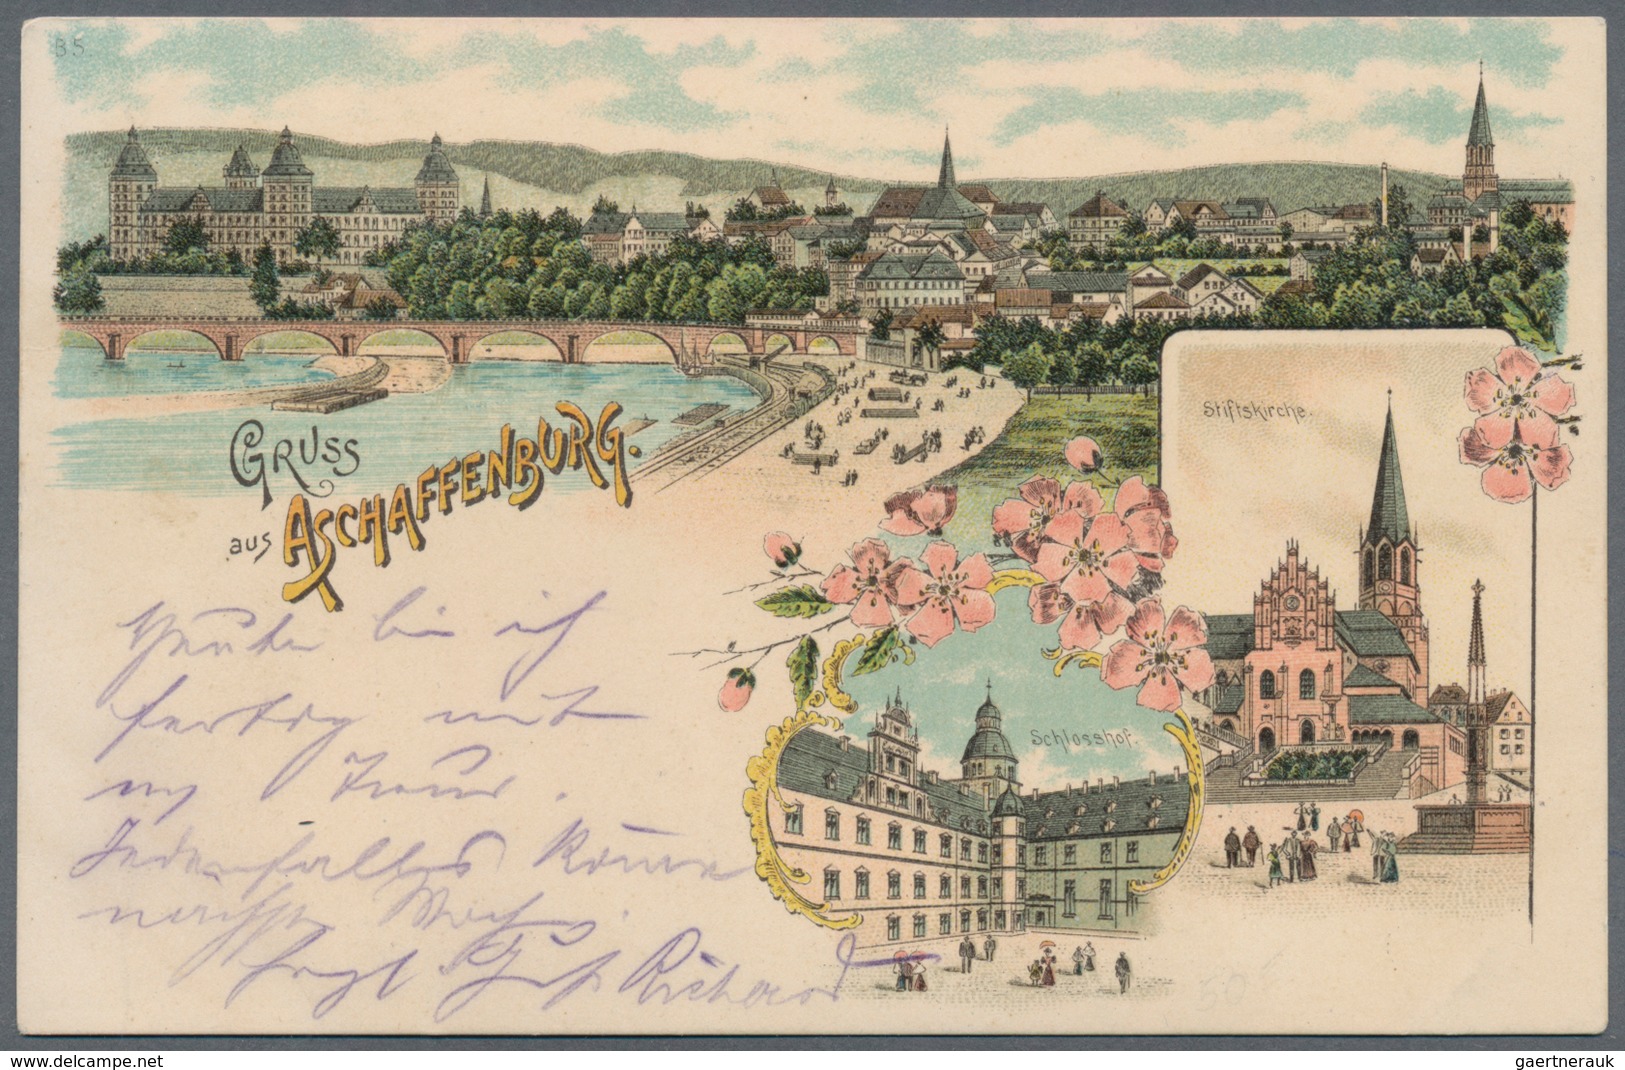 Ansichtskarten: Etwa 1700 Karten aus Deutschland und aller Welt, dabei viele Karten aus dem Alpenrau